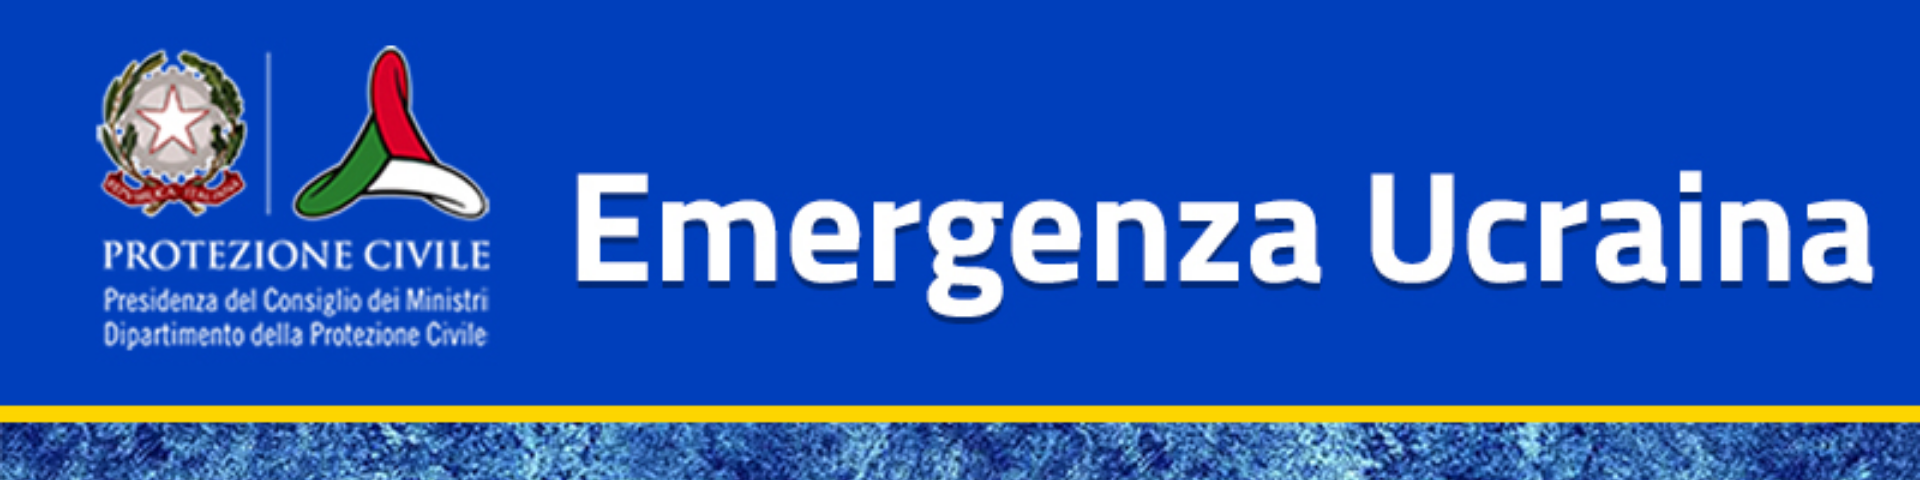 Informazioni emergenza Ucraina su sito del DPC